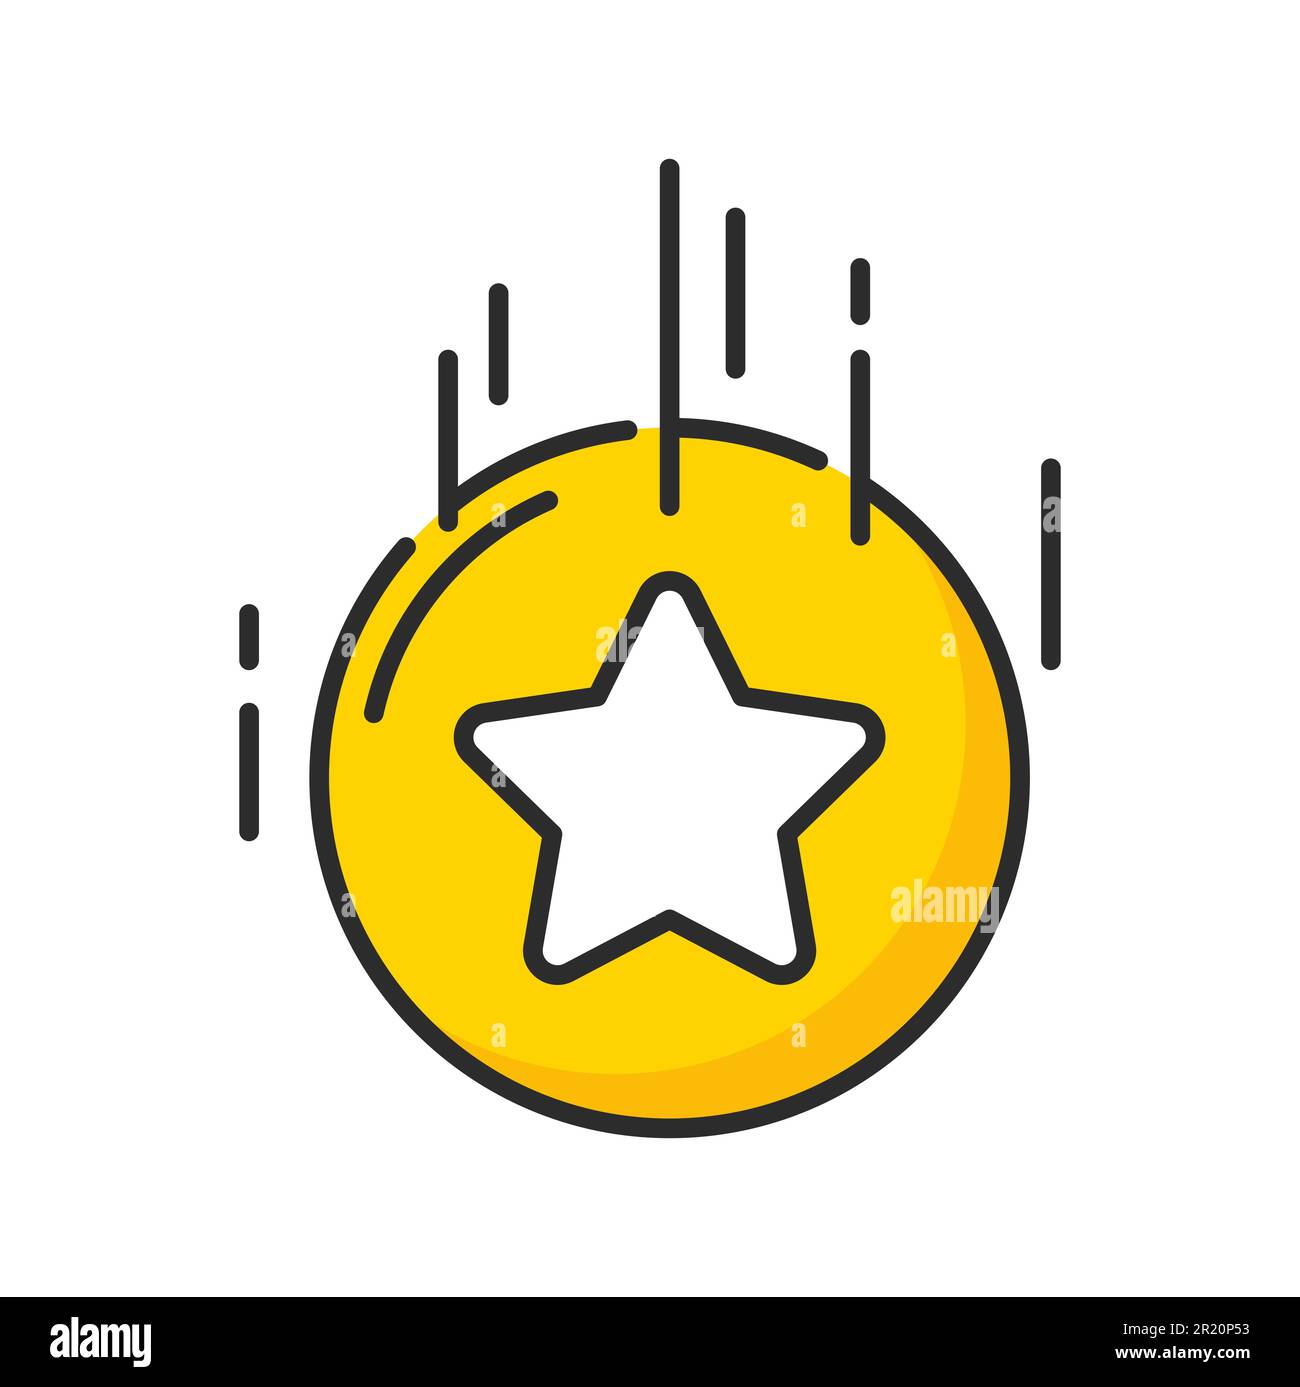 Goldmünze mit Sternsymbol für besondere Bonuspunkte, Bonusleistungen für Kundenloyalität und Prämie. Farbige Linie Token Geld isoliertes Symbol für exklusive Bonuspunkte des Treueprogramms Stock Vektor